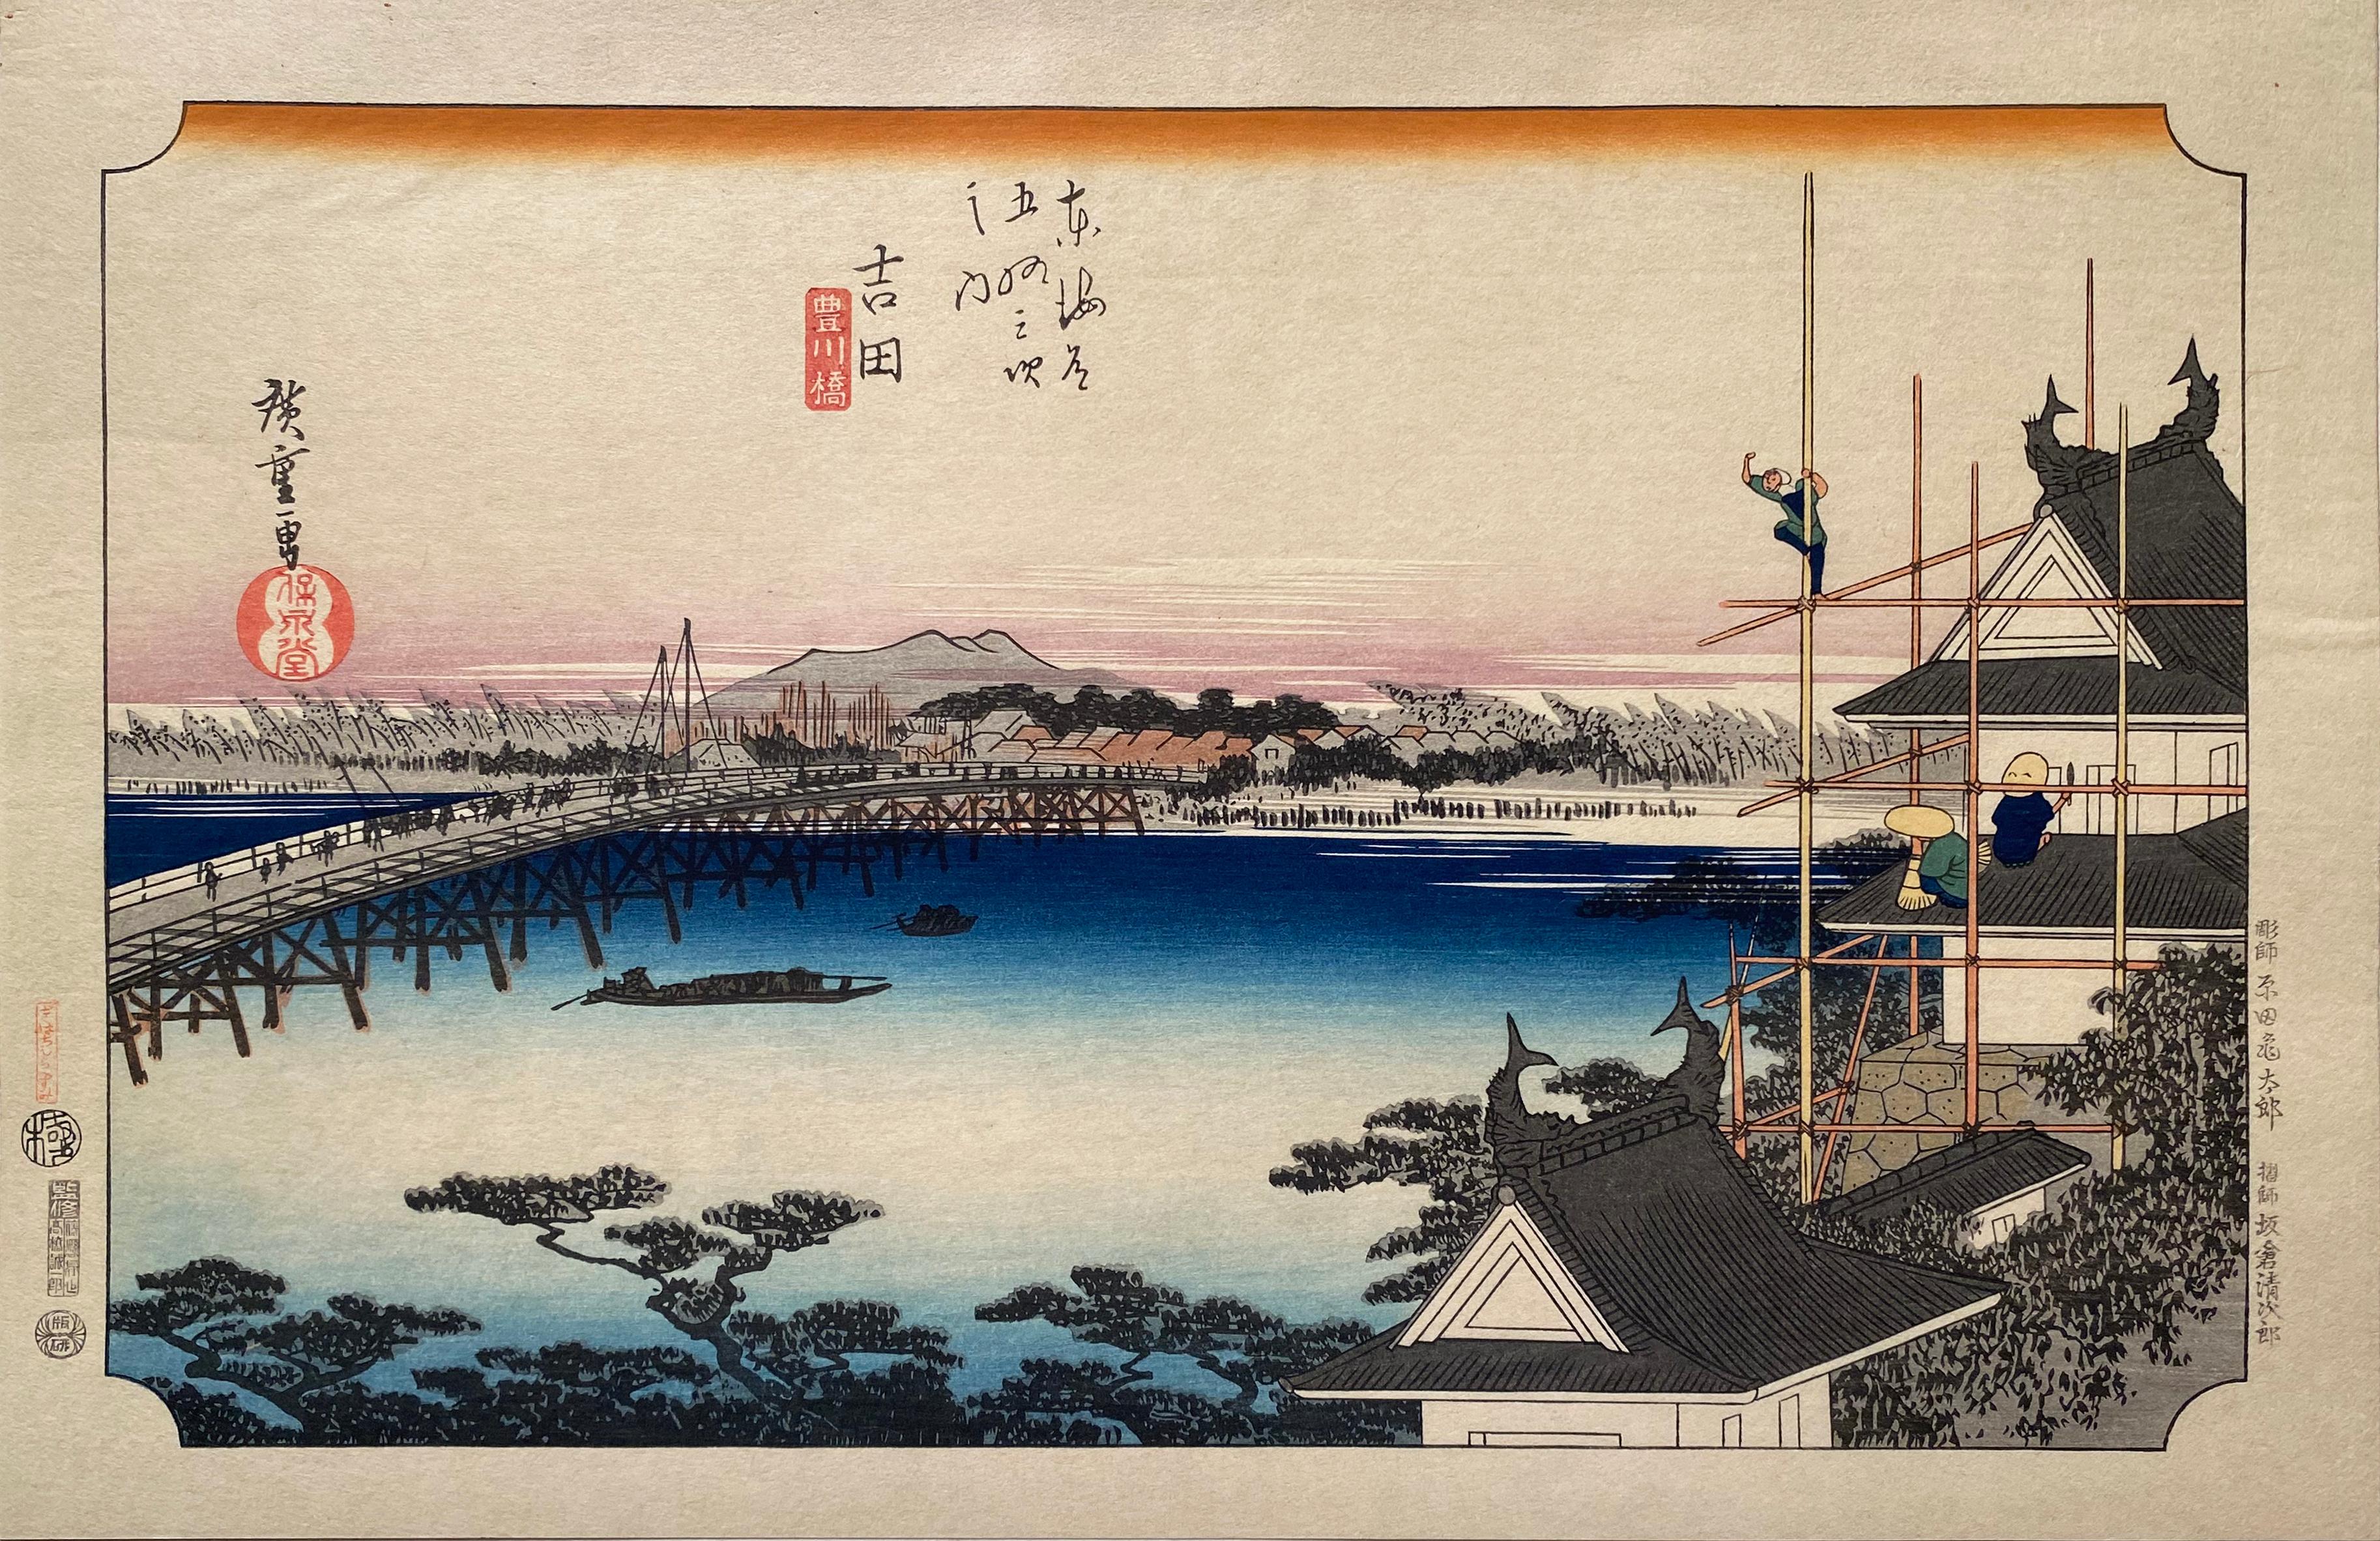 'View of Yoshida',  After Utagawa Hiroshige 歌川廣重, Ukiyo-e Woodblock, Tokaido